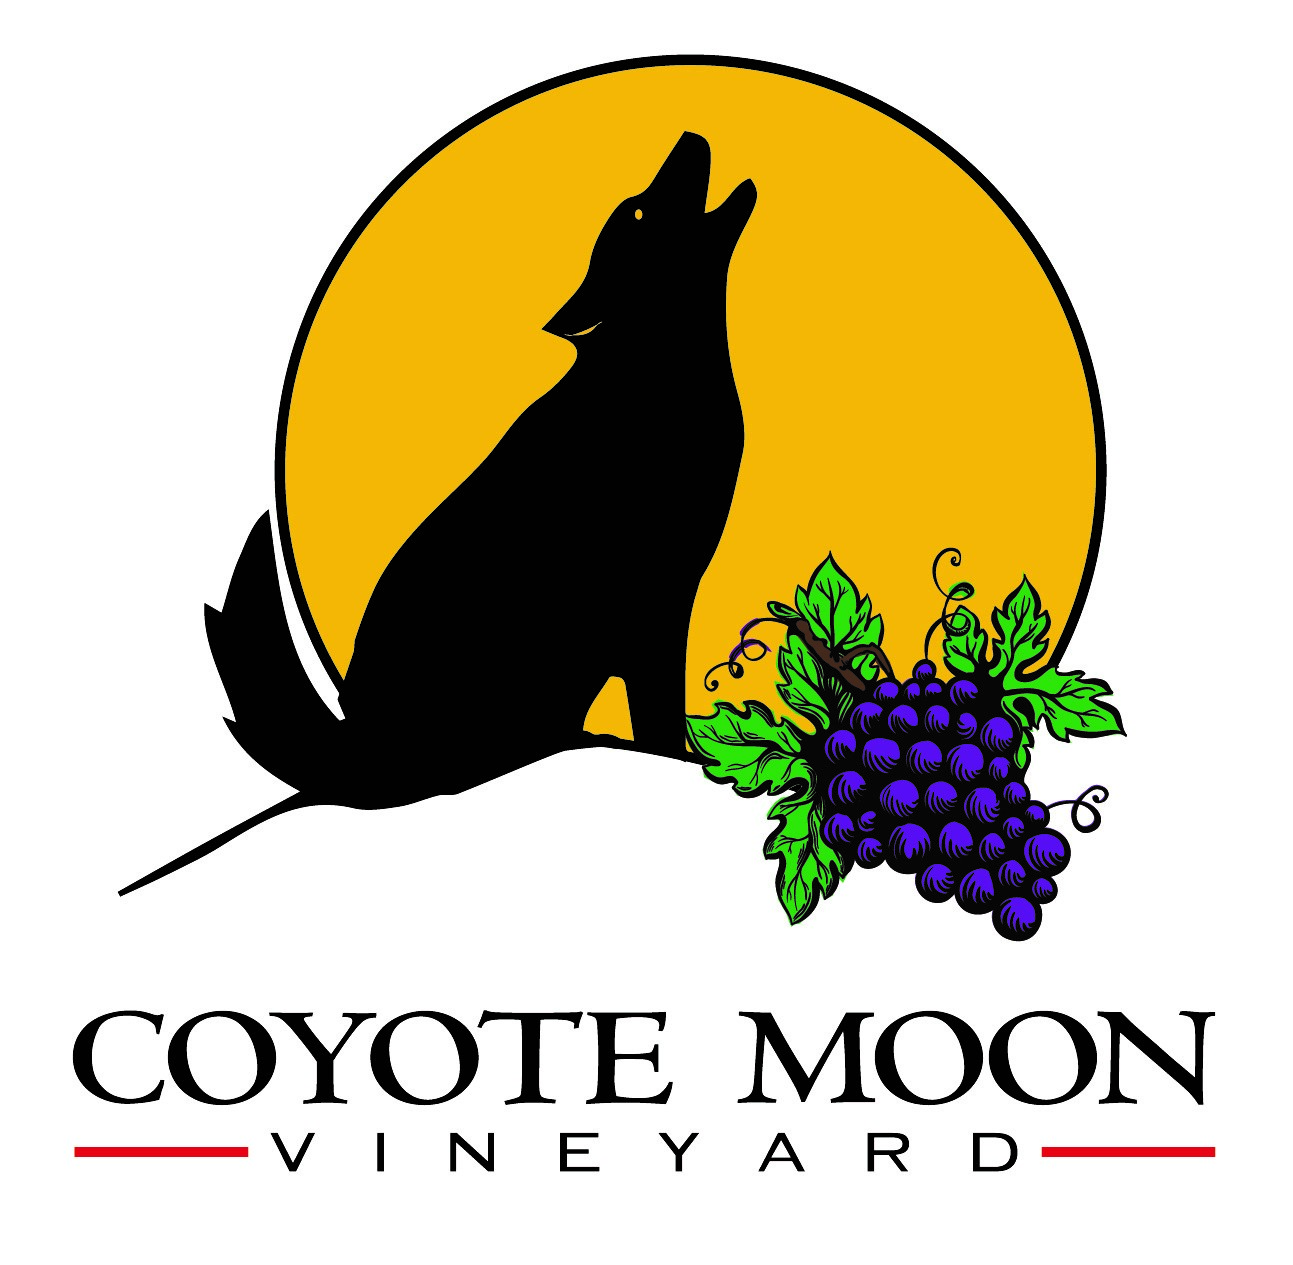 Coyote Moon Vineyard